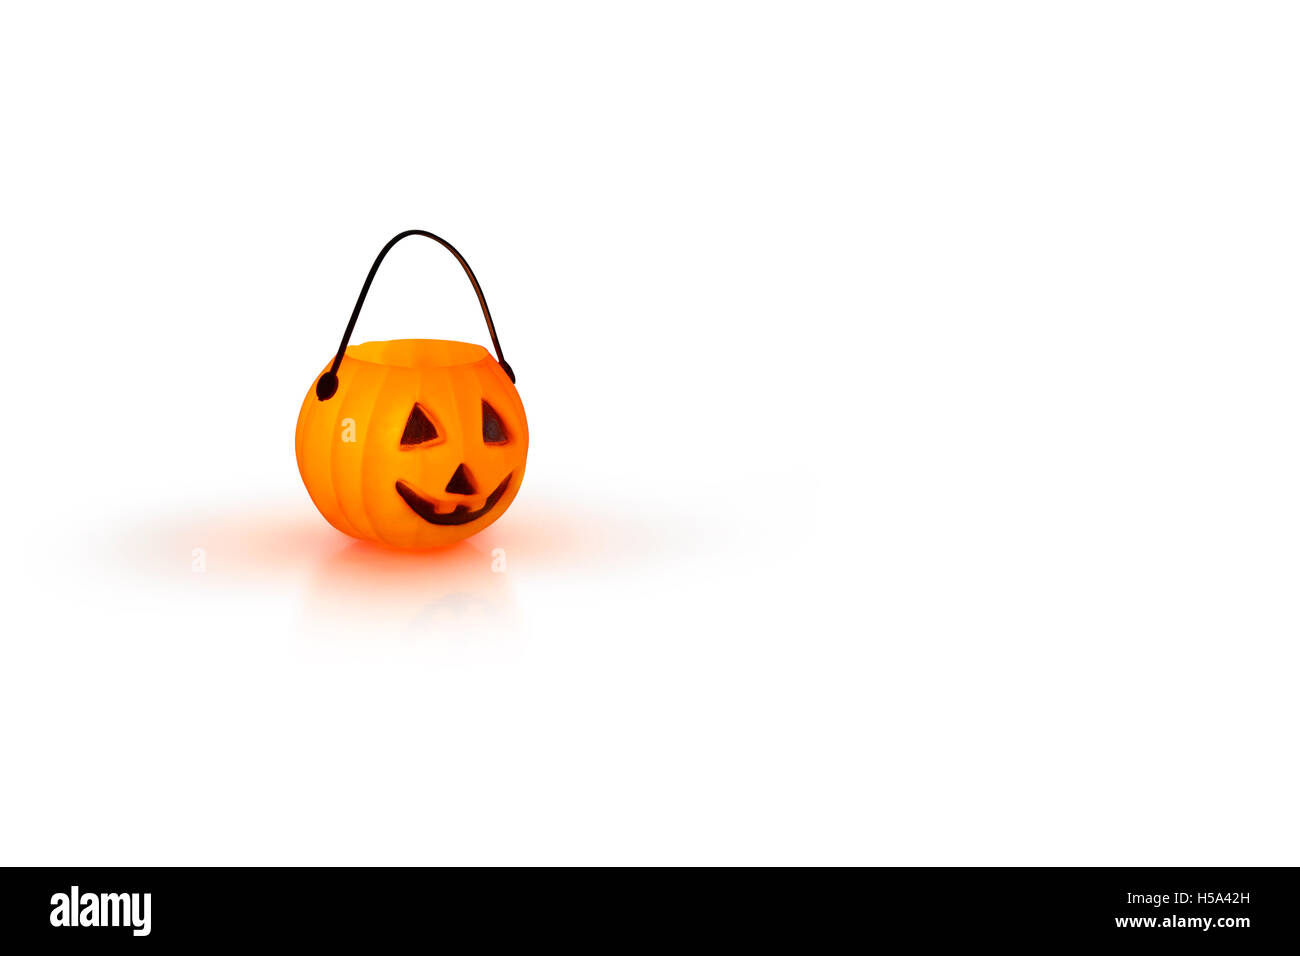 Halloween-Konzept mit einem orange glühenden Kürbis Form Teelicht Kerzenhalter auf weißem Hintergrund Stockfoto